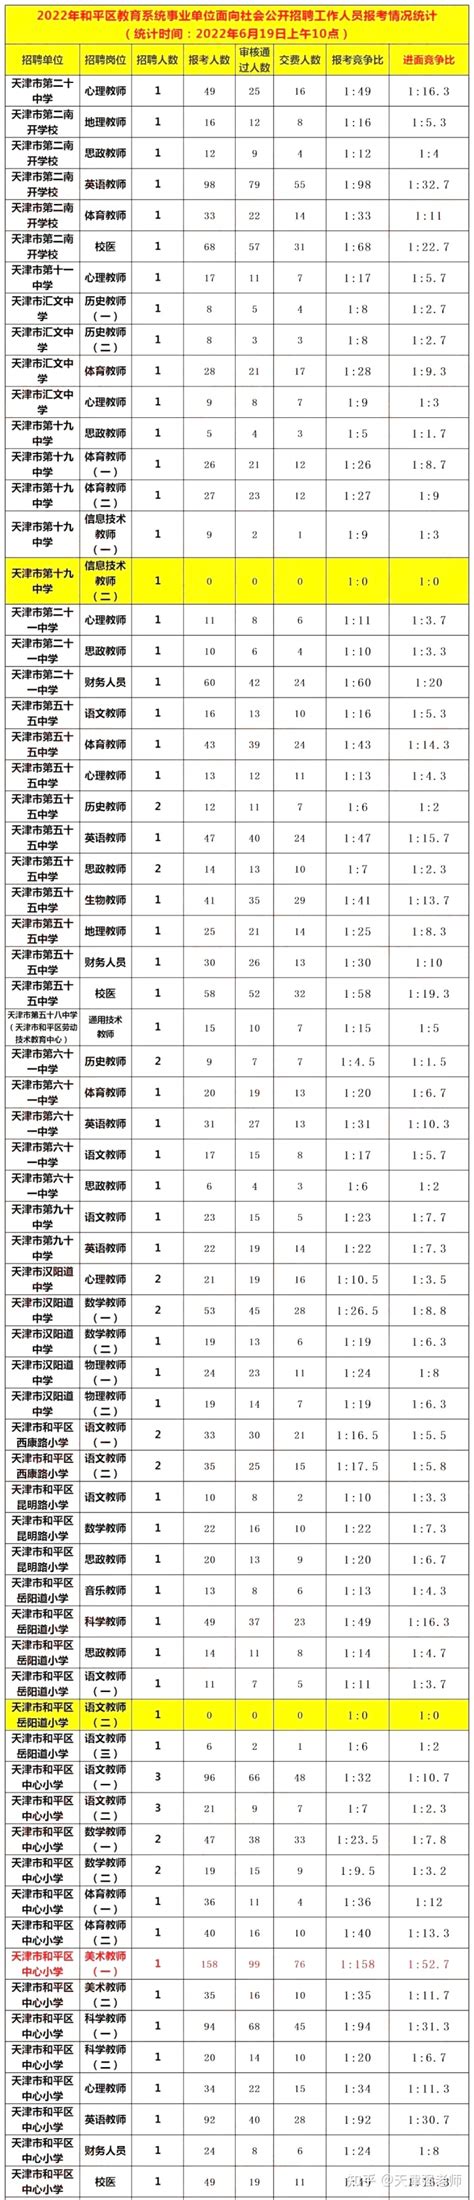 2021年天津市教师招聘各区出题方变化以及笔试内容对比 - 知乎